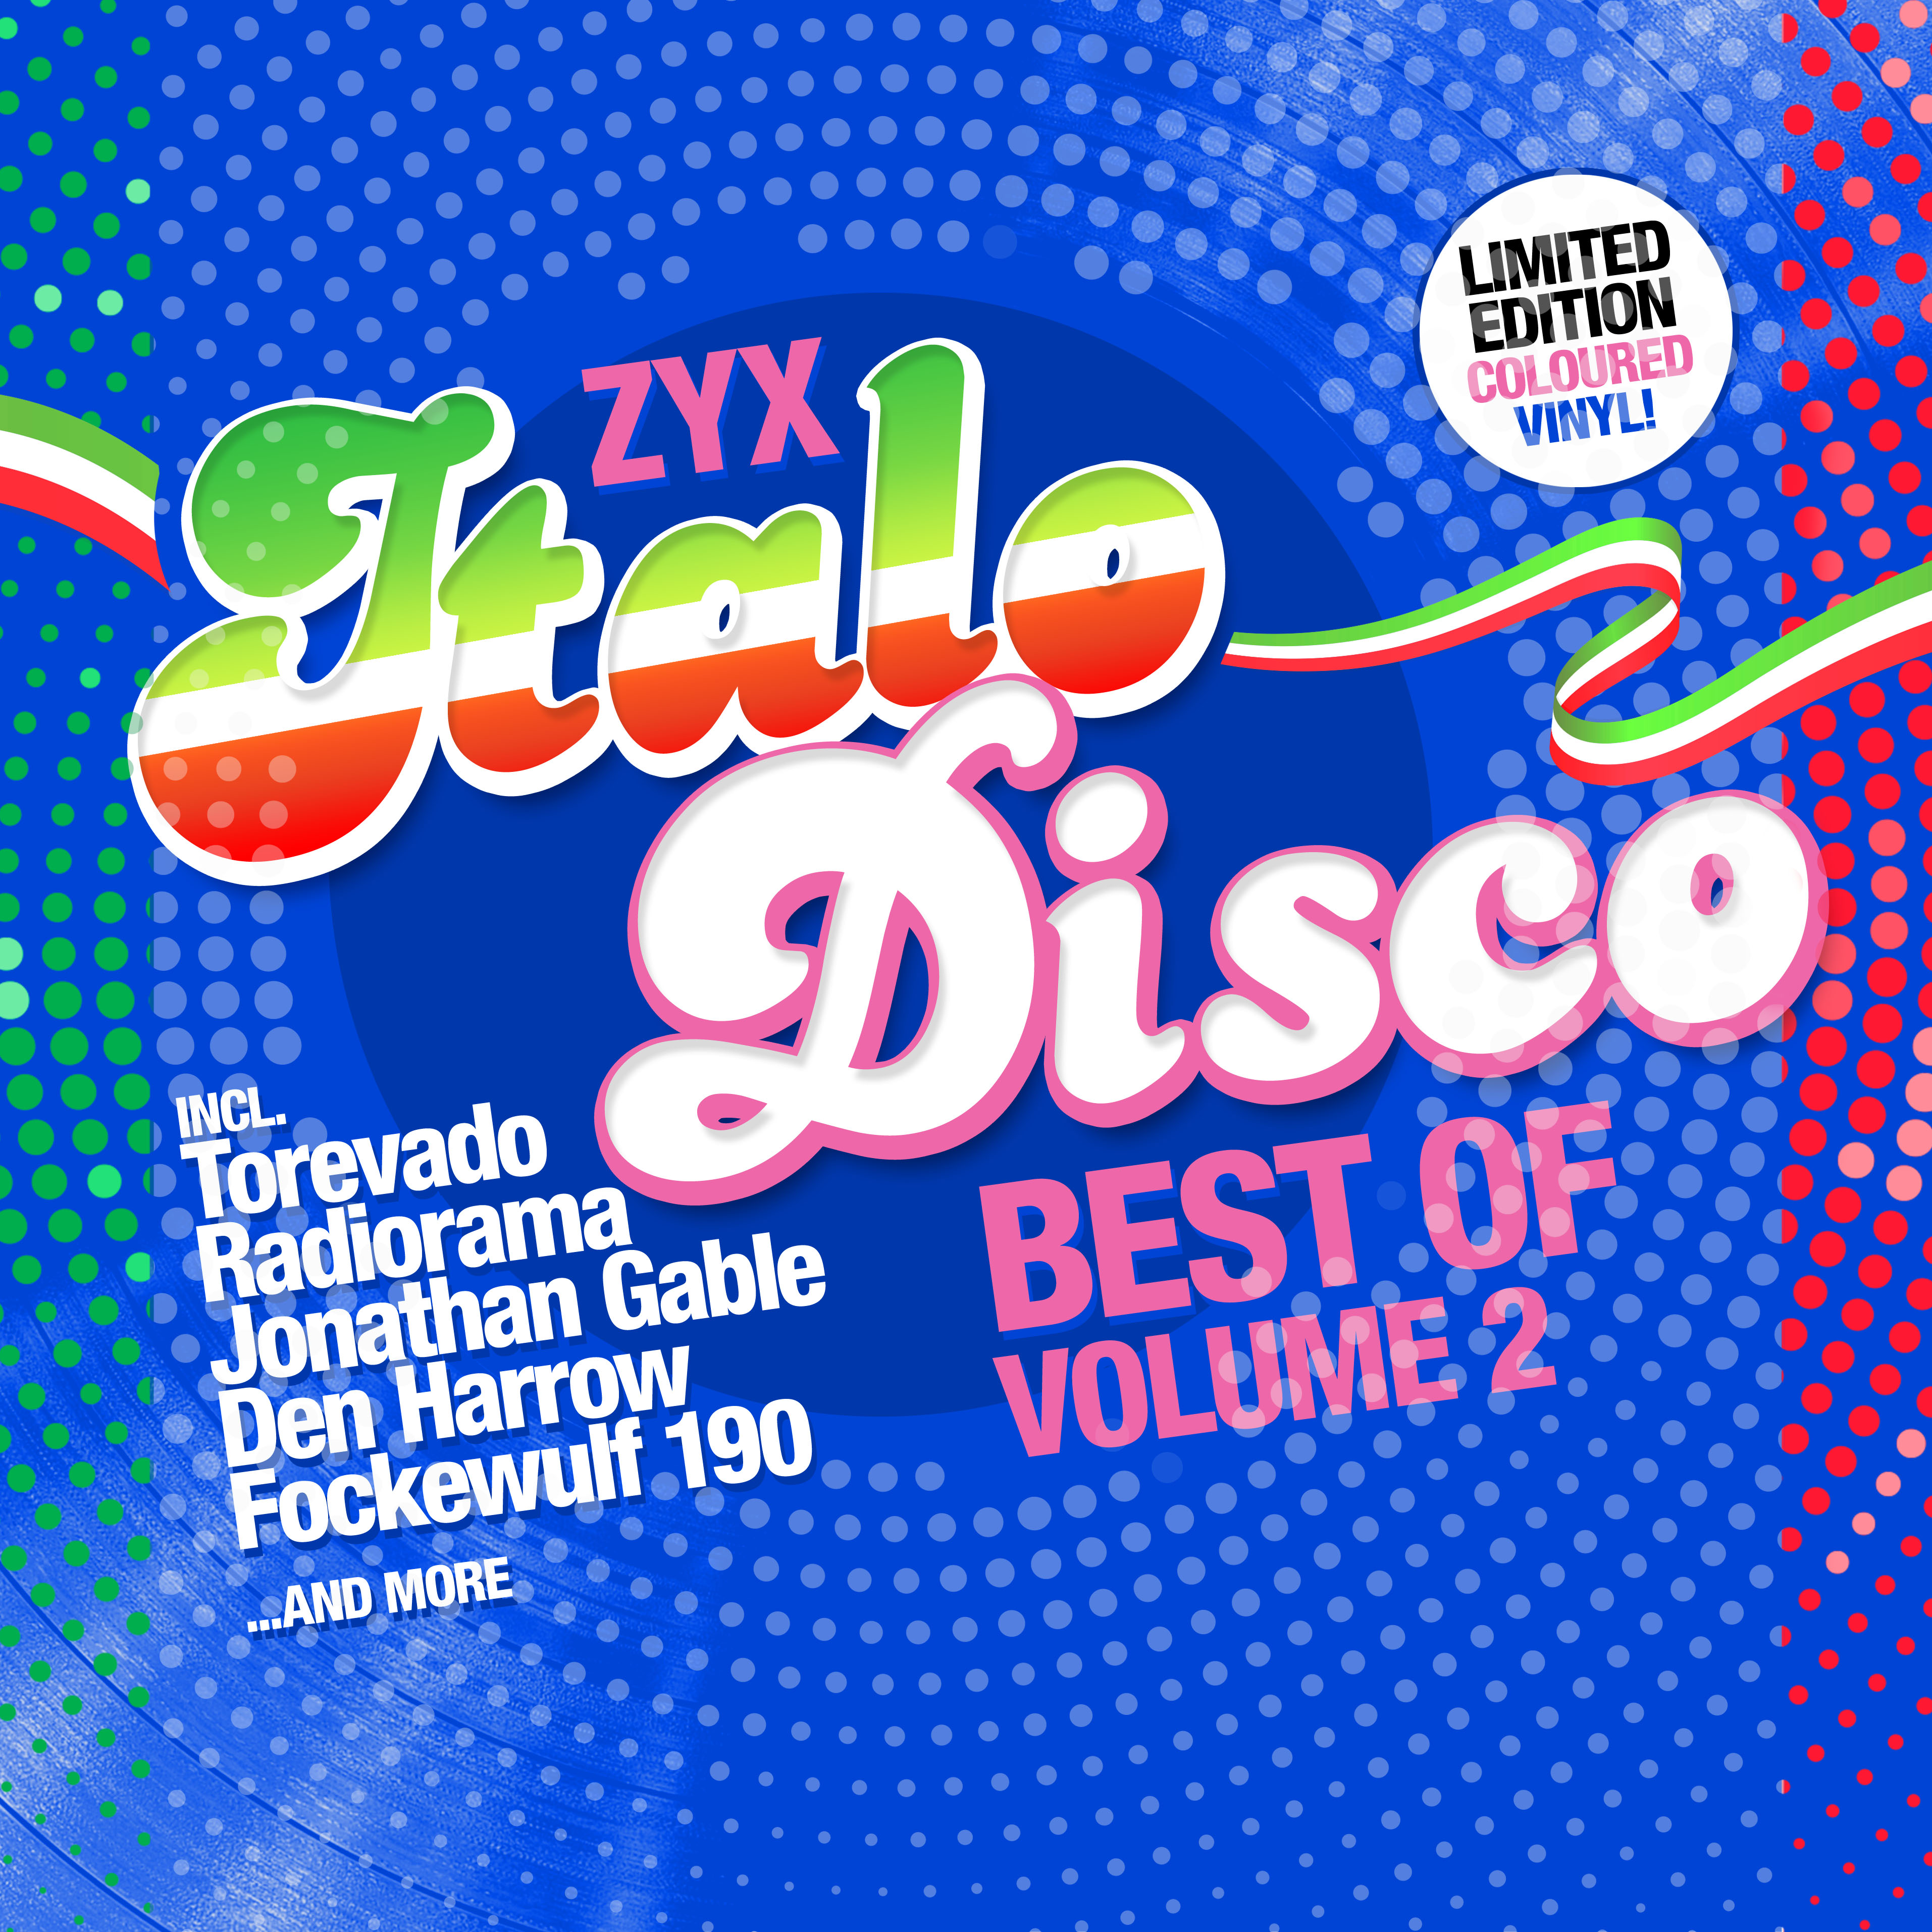 Альбом итало диско. ZYX Italo Disco - best of Volume 2. ZYX Italo Disco New Generation. ZYX Italo Disco Hits. Disco Vinyl.